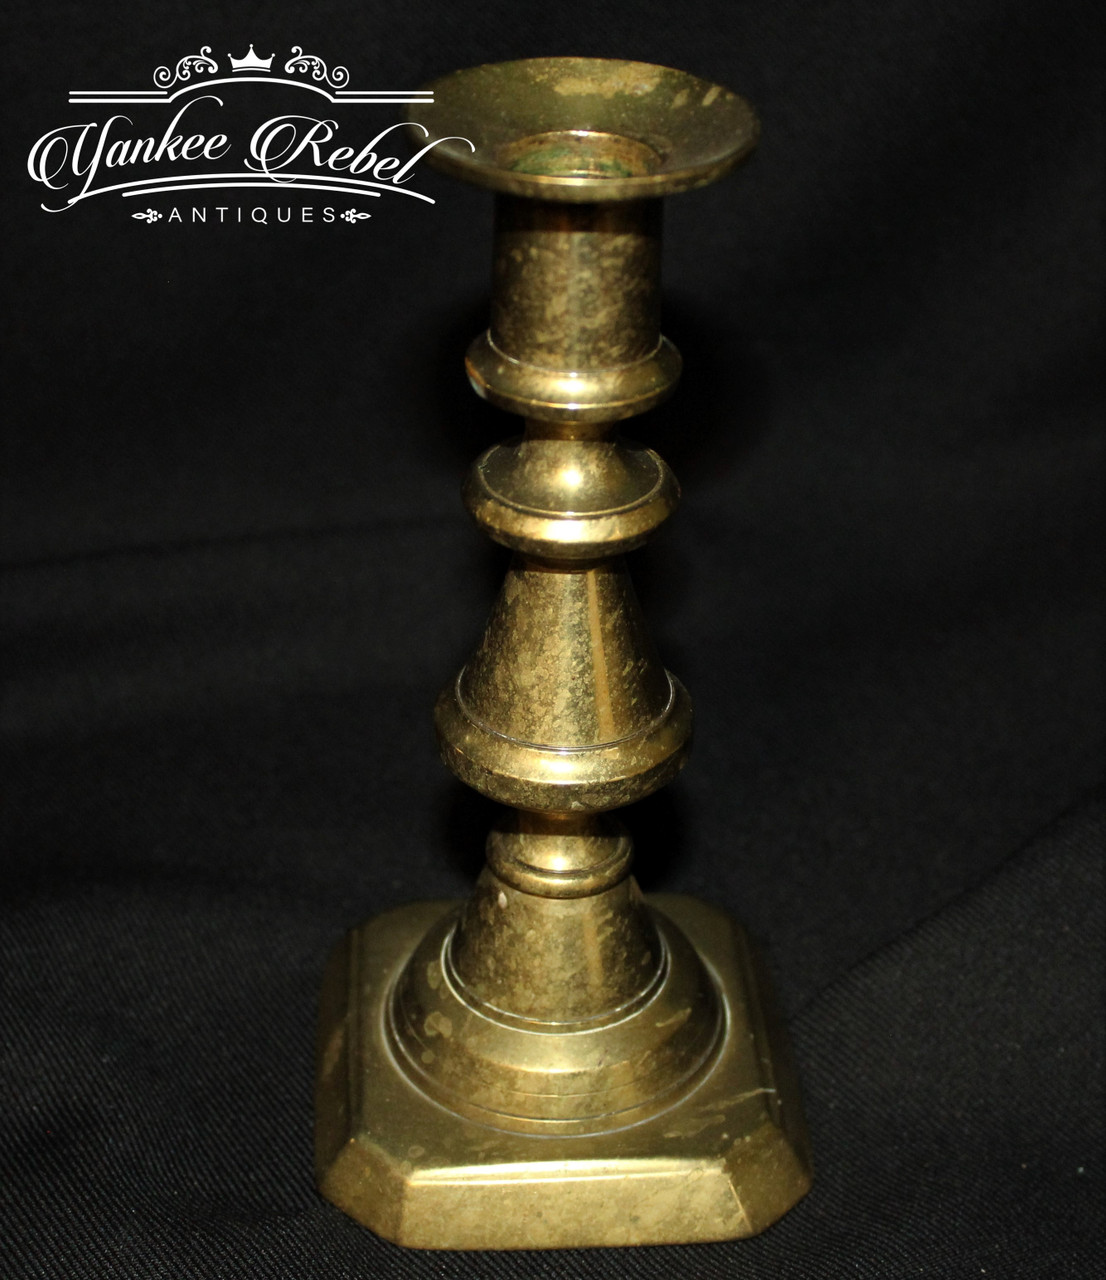 Civil War Officer's brass candle holder, circa 1845 – 1860